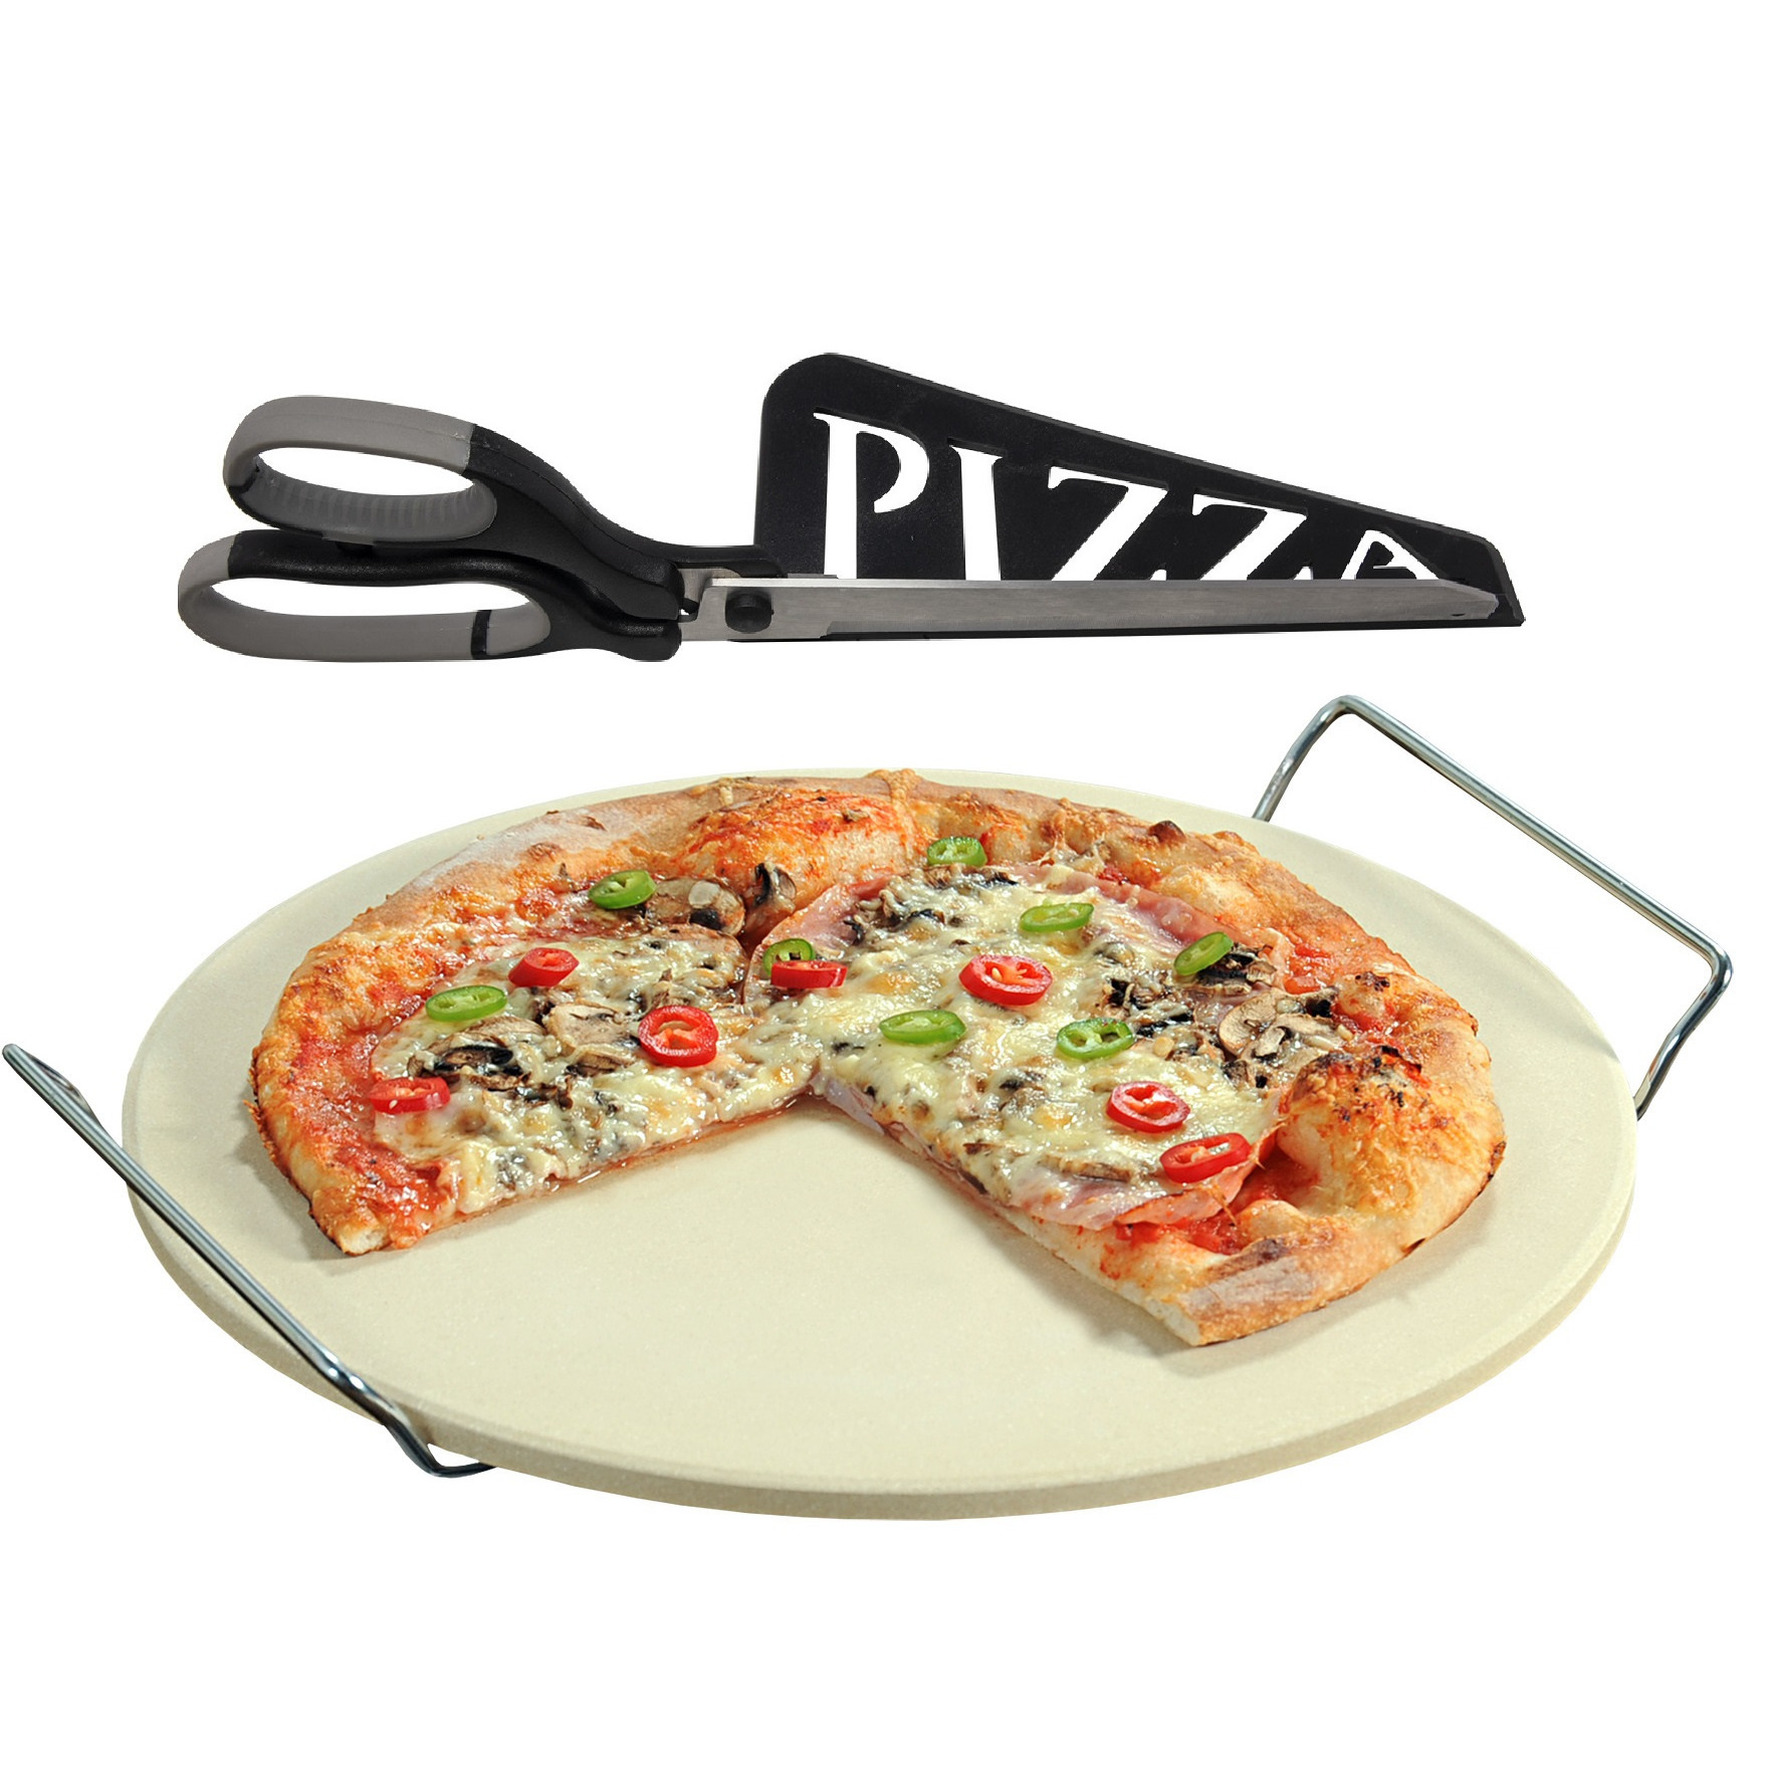 Keramieken pizzasteen rond 33 cm met handvaten en zwarte pizzaschaar